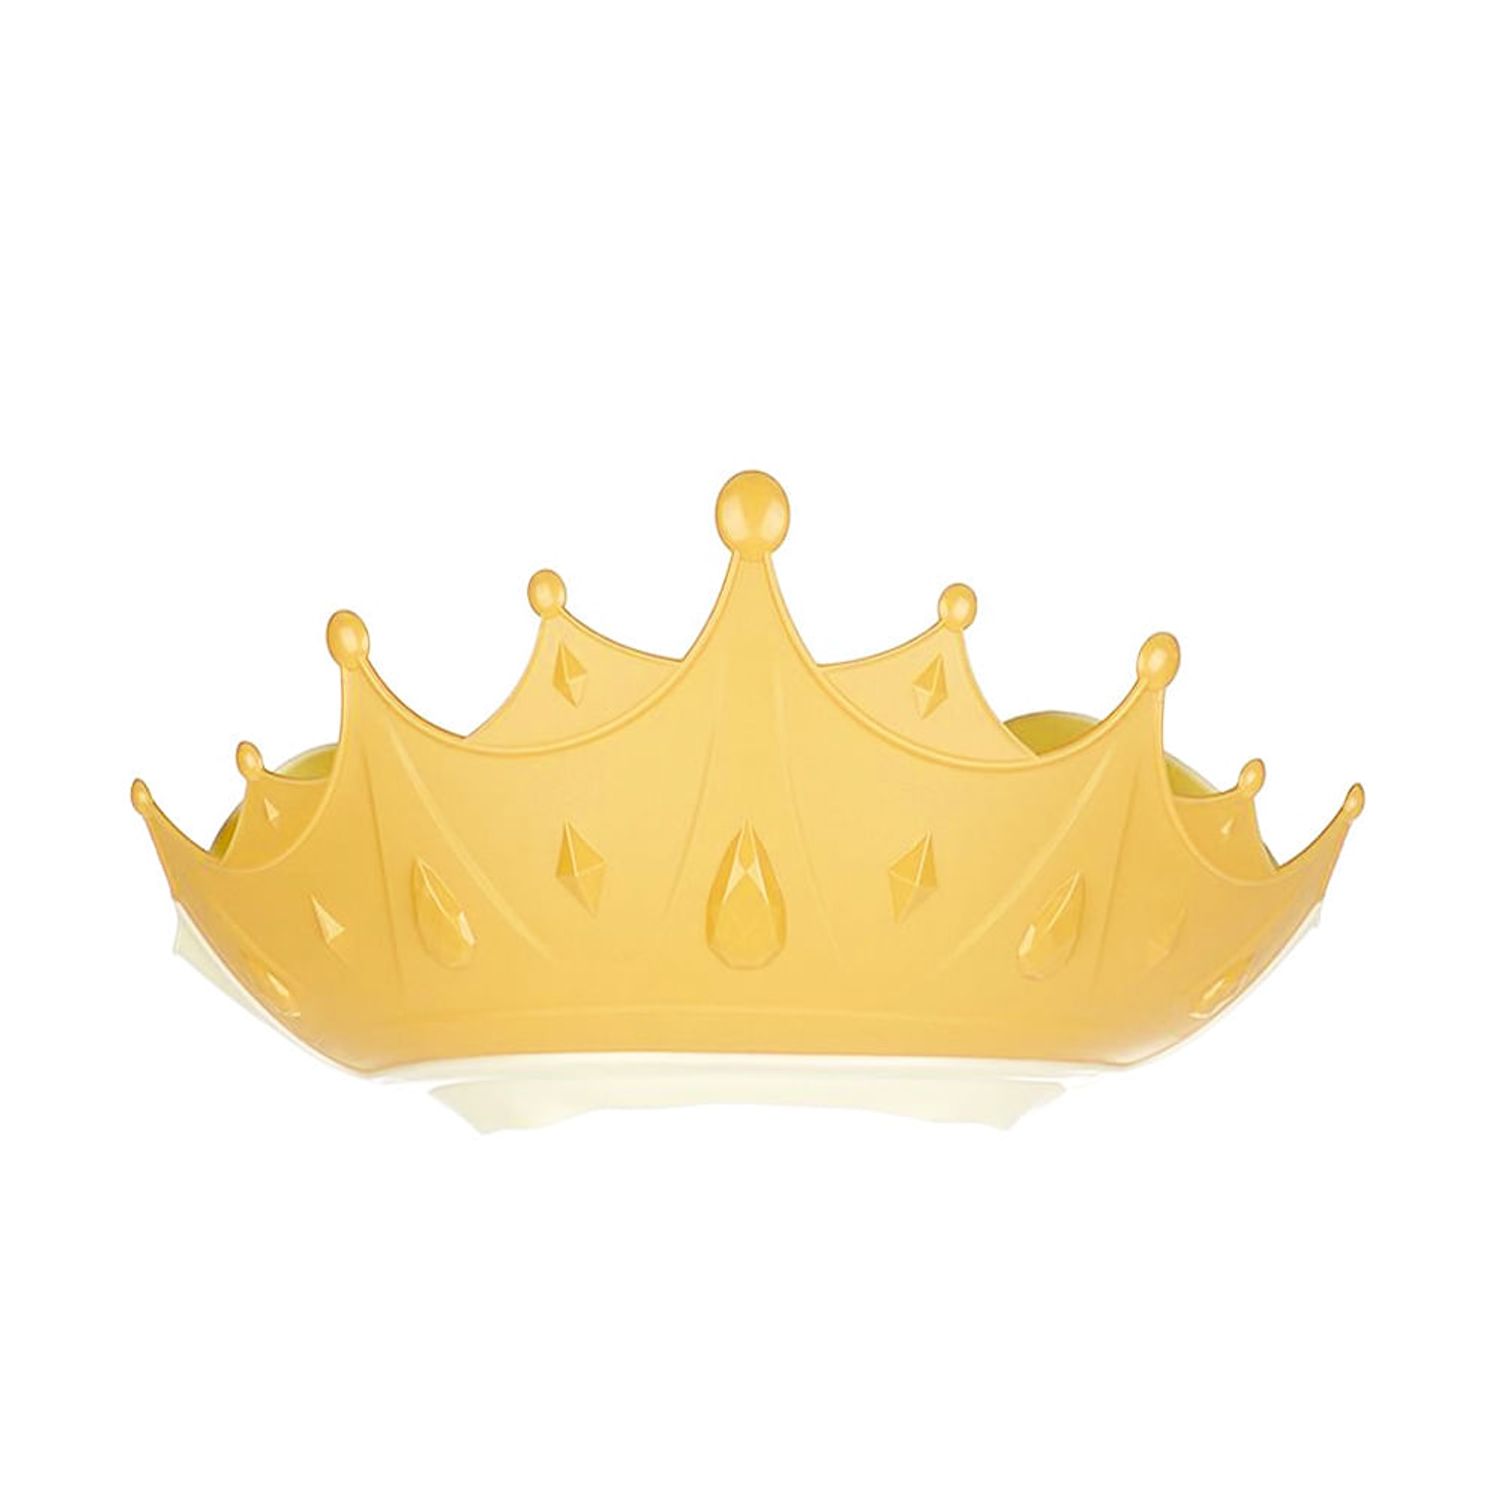 Corona Rey Enrique - Envío en 24h